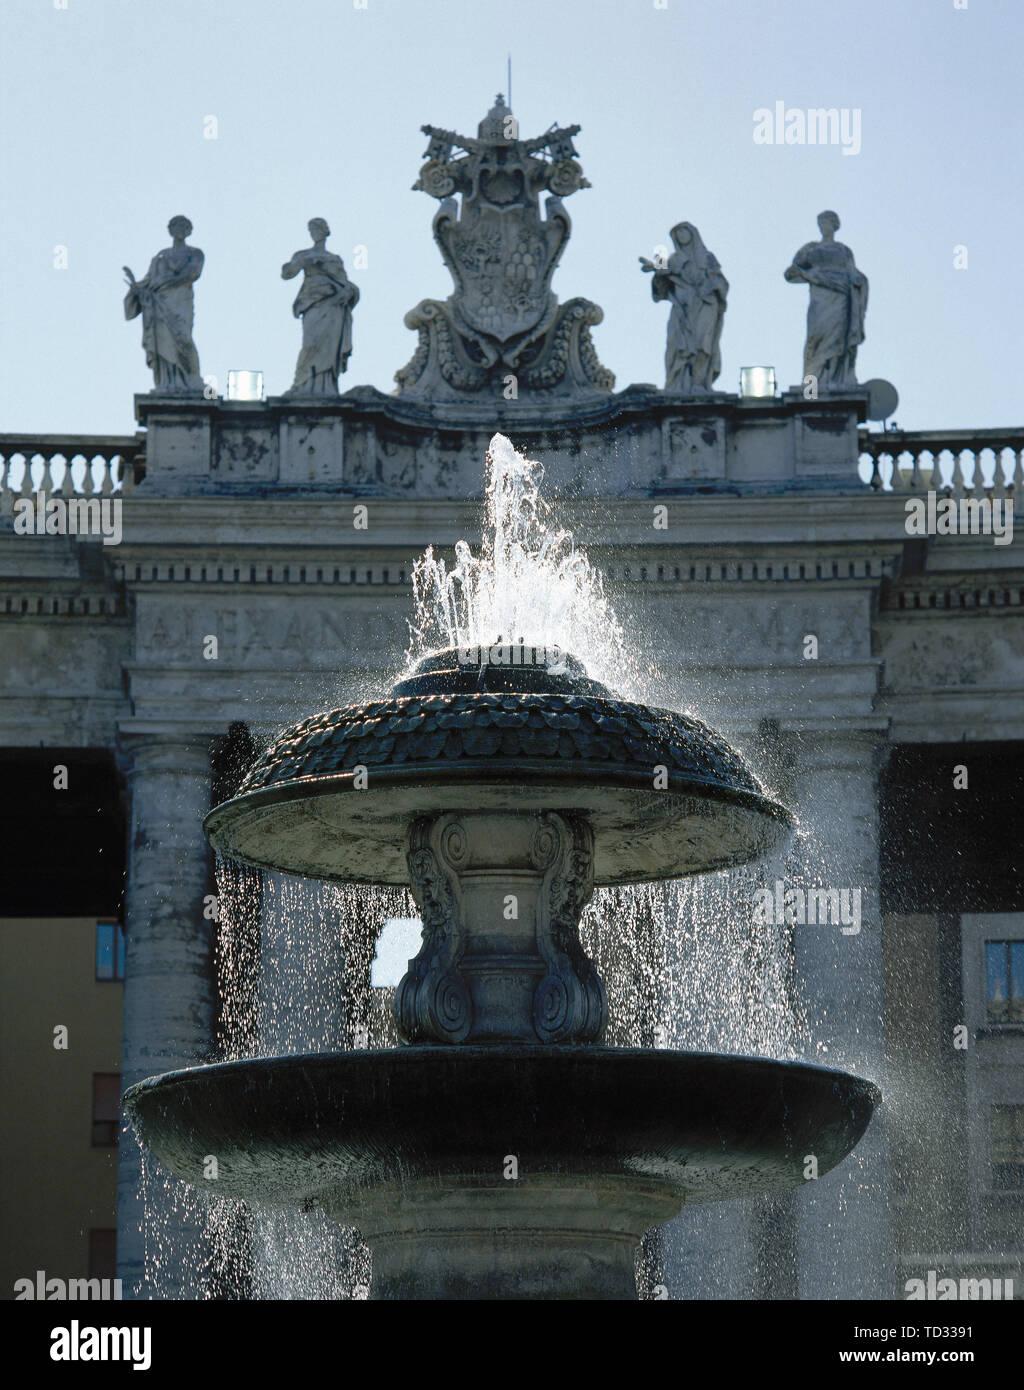 État de la Cité du Vatican. Fontaine de la Place Saint Pierre, créé par Carlo Maderno (1612-1614), situé sur le côté nord de la place. Banque D'Images